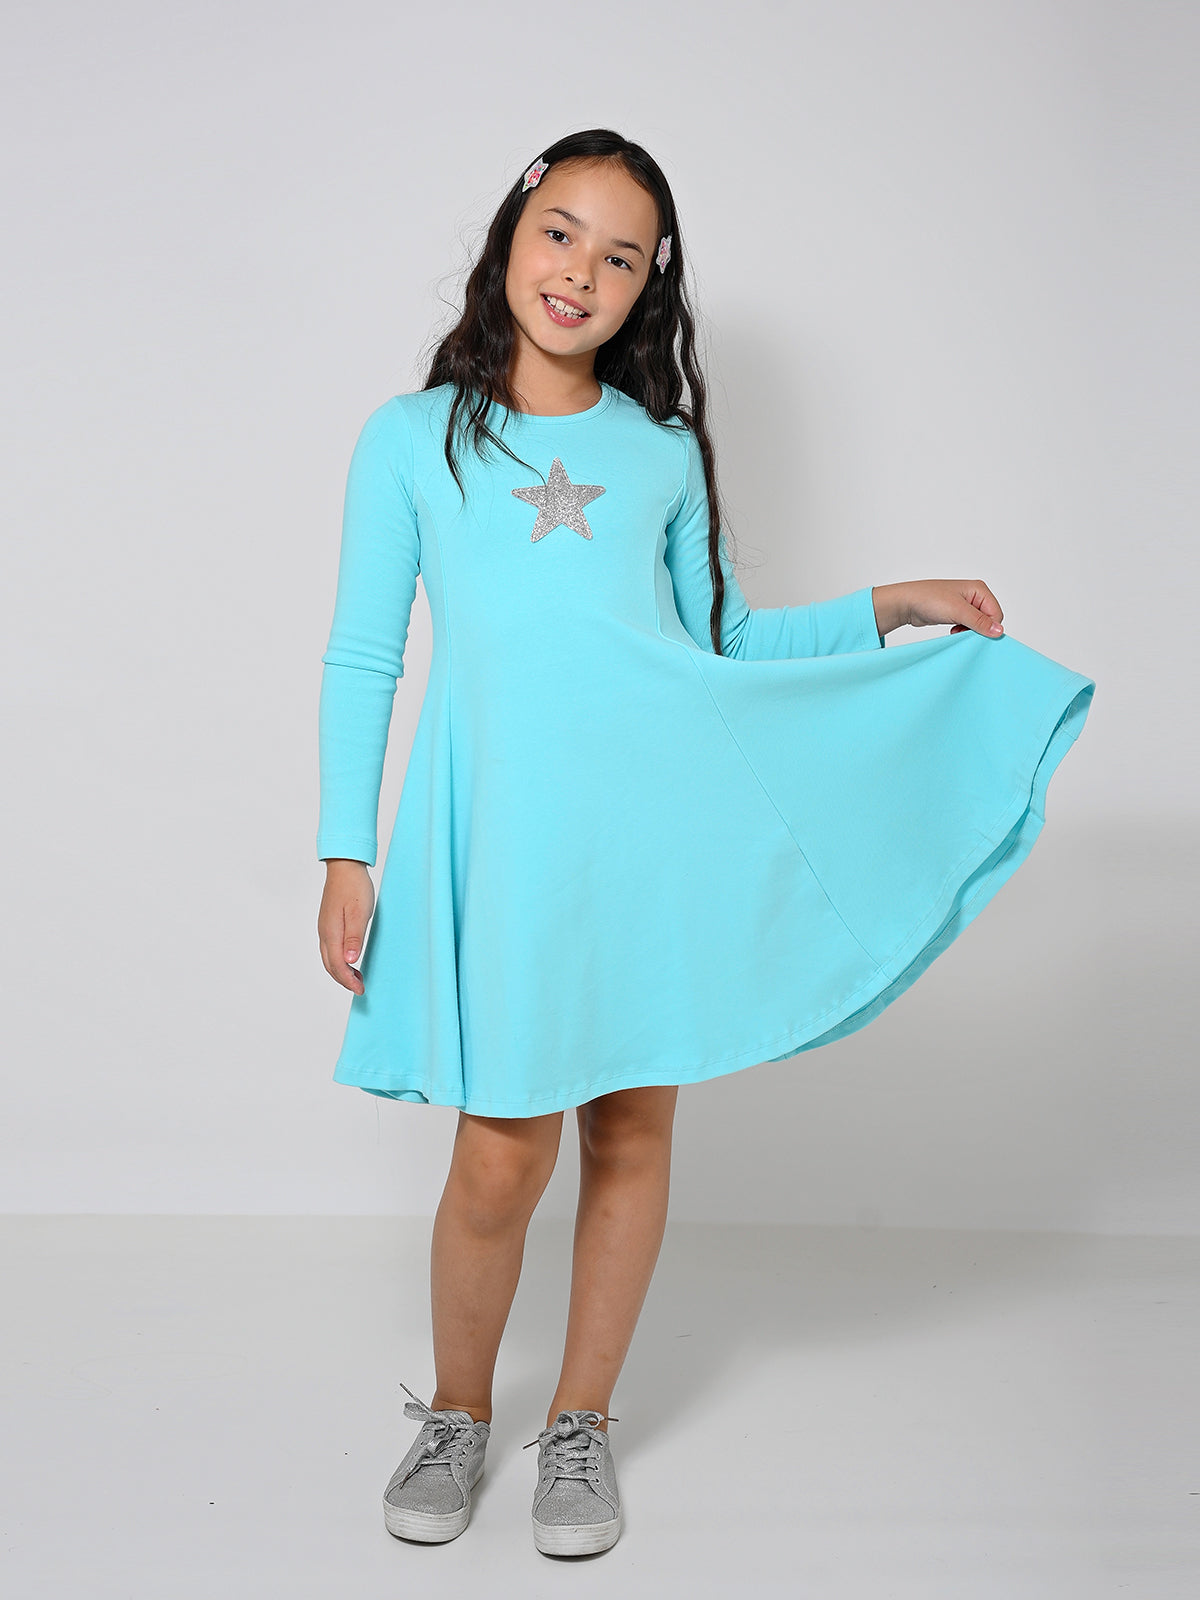 שמלת נועה כוכב / ילדות- Almonet|עלמונת